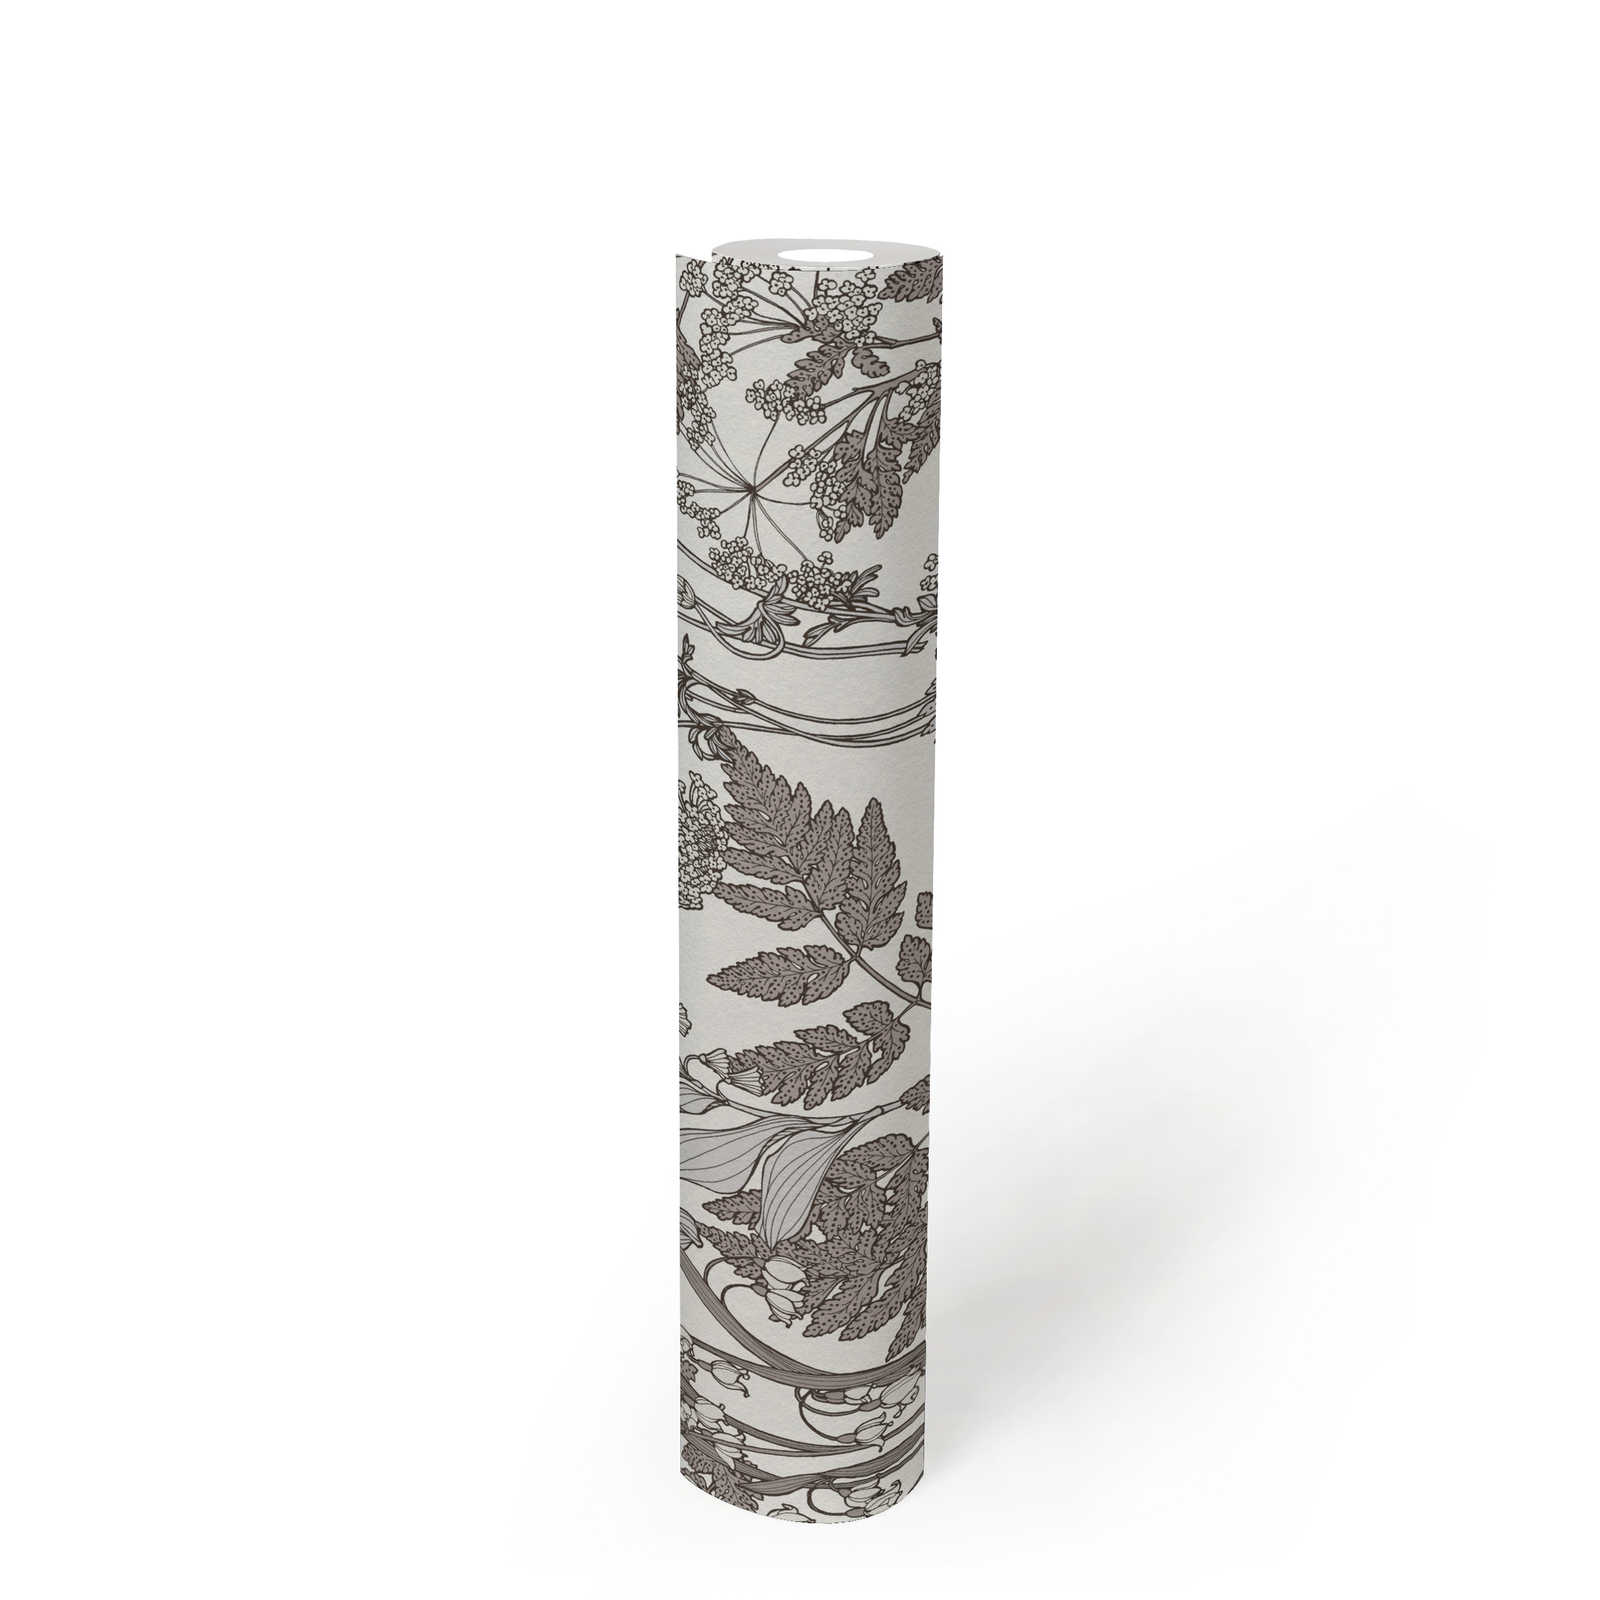             Papel pintado Naturaleza hojas y flores en estilo rústico moderno - gris, blanco
        